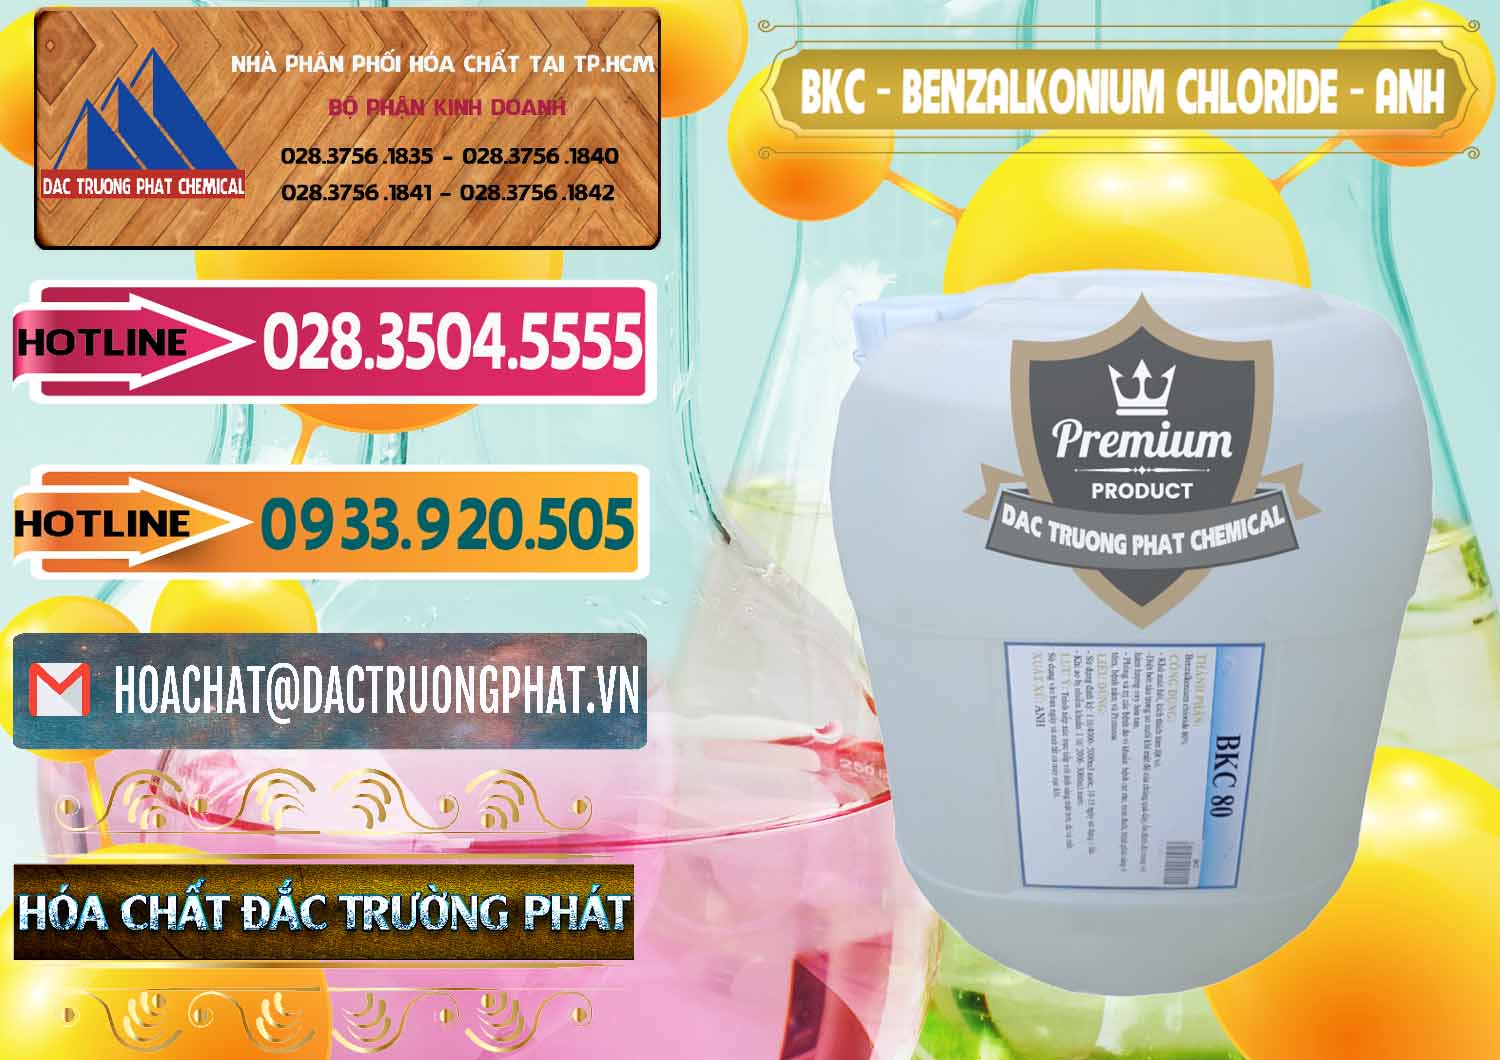 Đơn vị chuyên phân phối - bán BKC - Benzalkonium Chloride Anh Quốc Uk Kingdoms - 0415 - Nhà cung ứng _ phân phối hóa chất tại TP.HCM - dactruongphat.vn